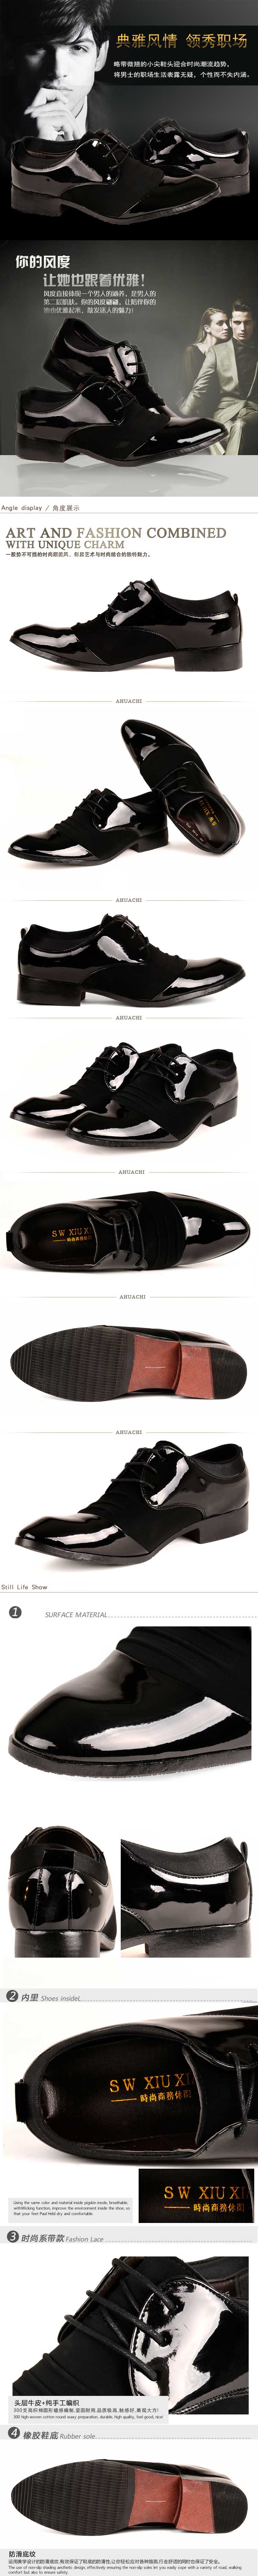 jual sepatu kantor pria model korea terbaru dengan kualitas import model pantofel